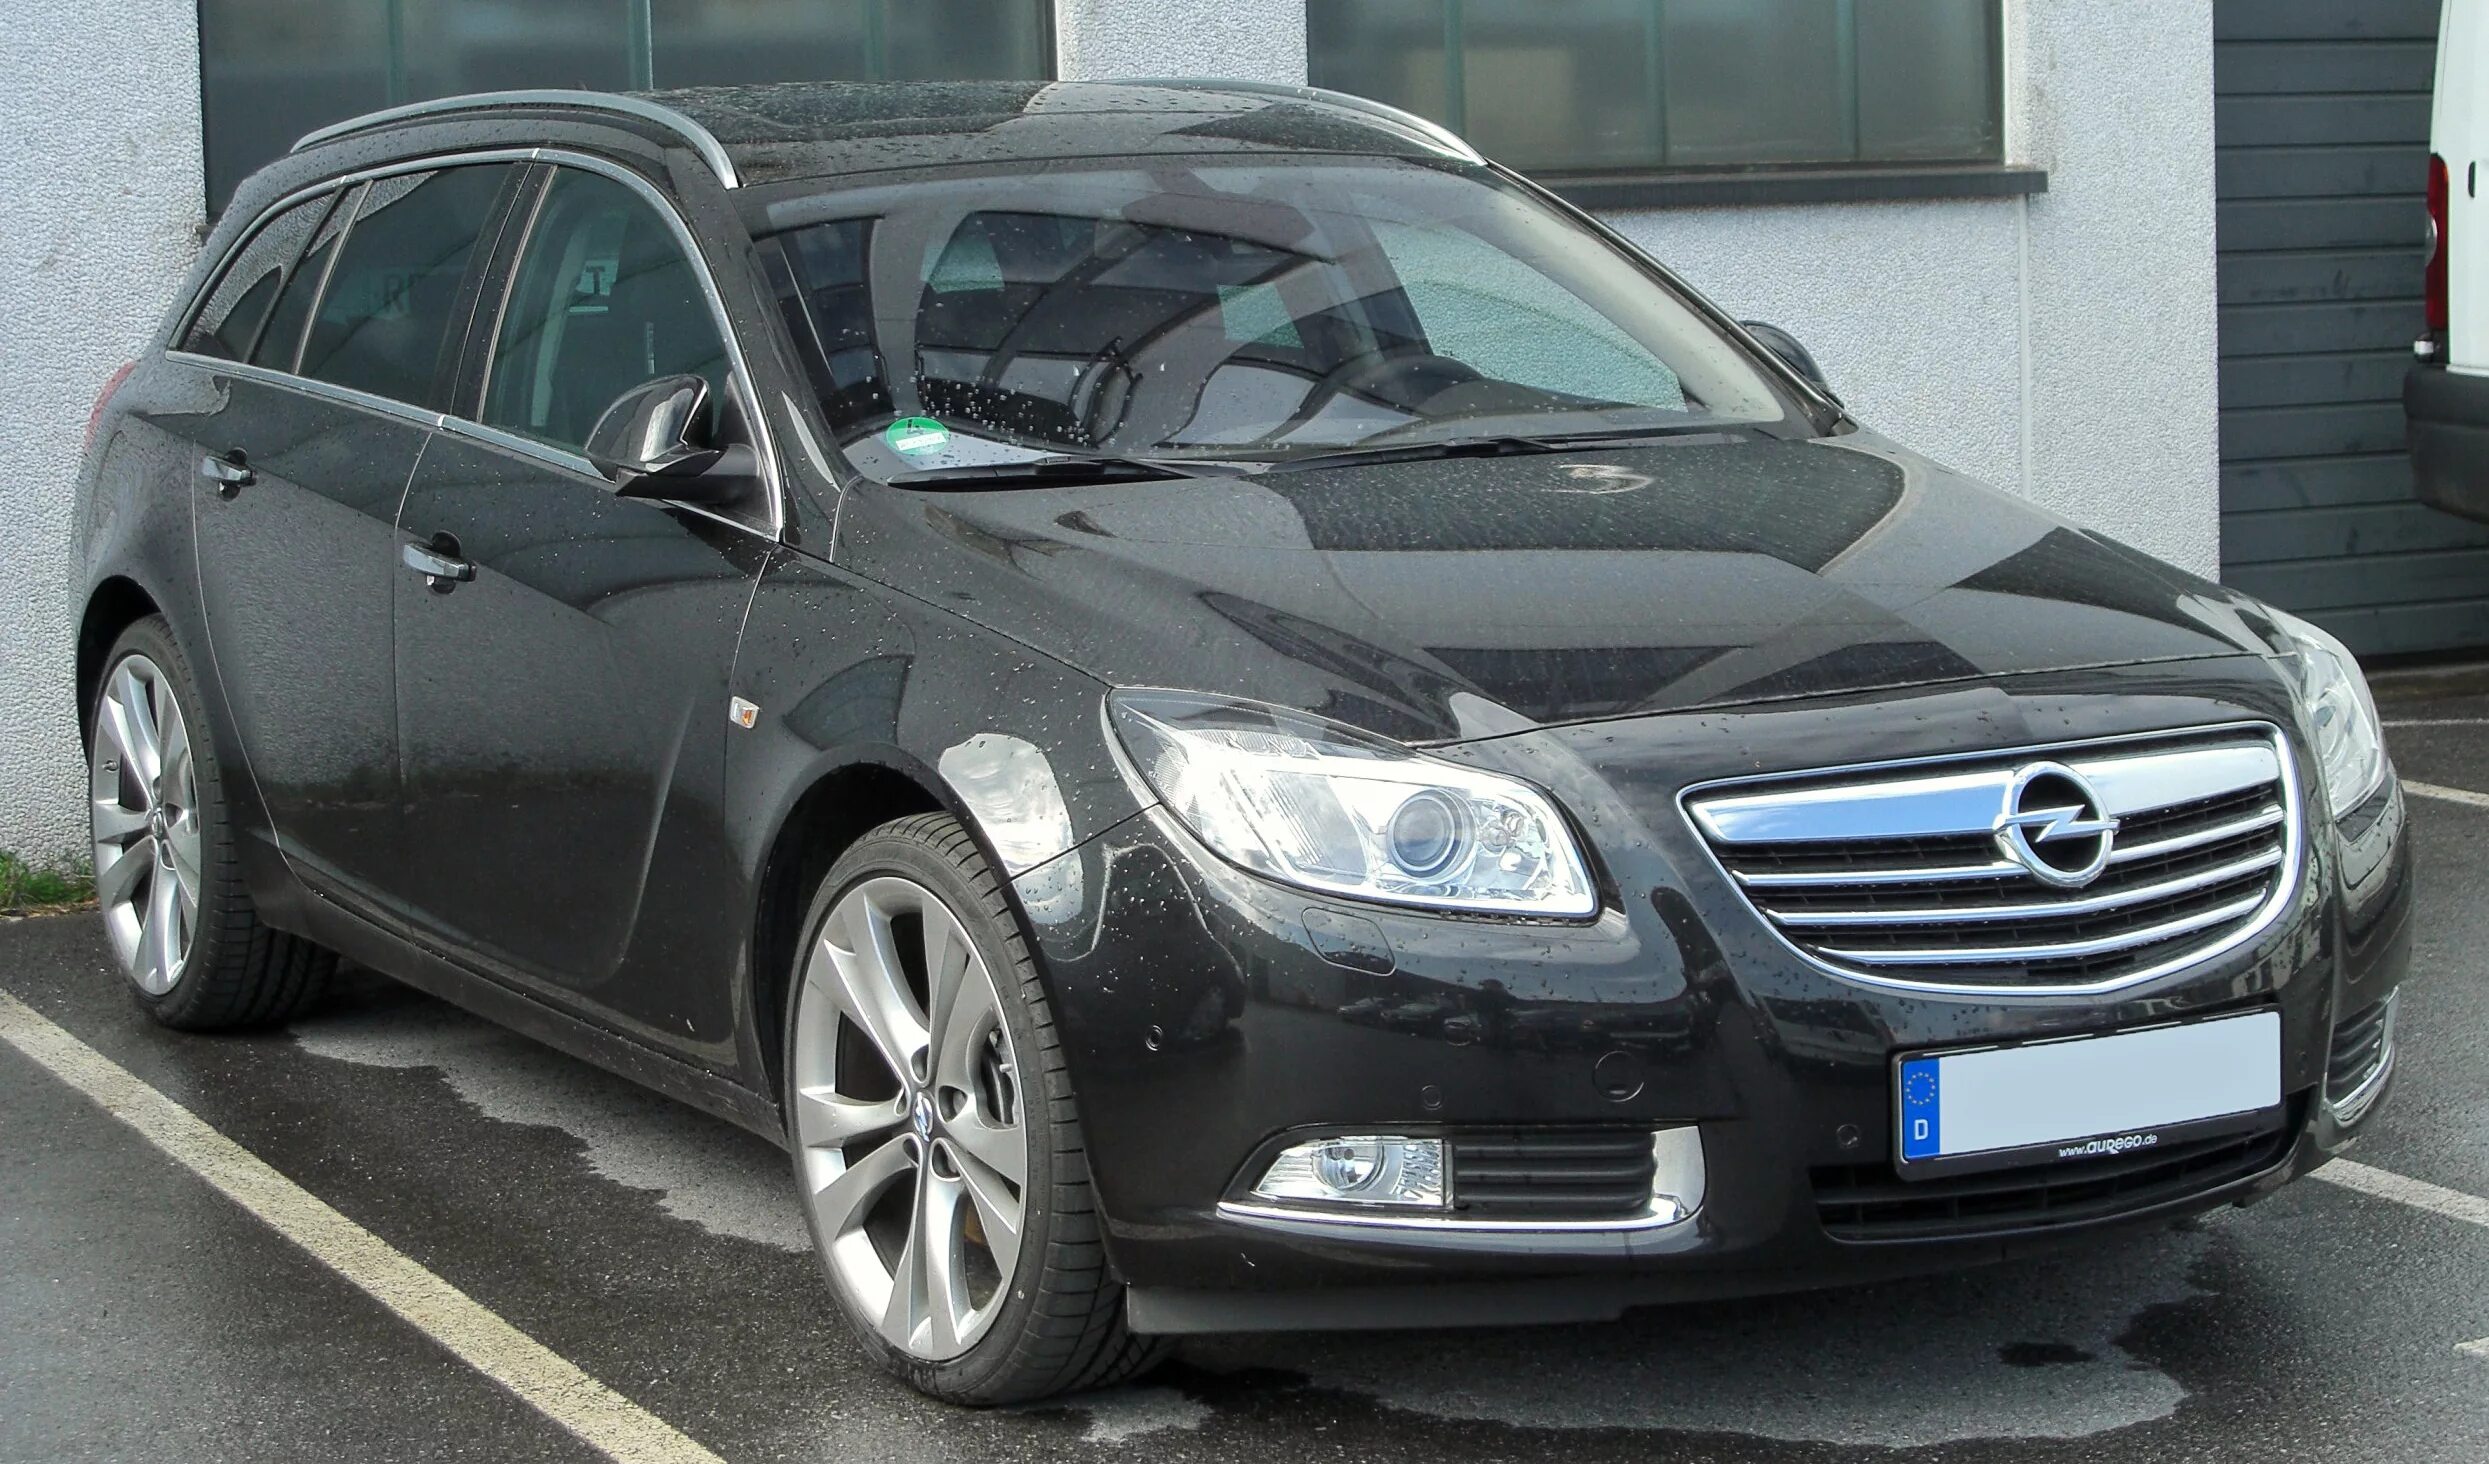 Opel Insignia 2010. Opel Insignia Sport 2010. Opel Insignia 2. Опель Инсигния 2.0 дизель. Купить опель инсигния с пробегом